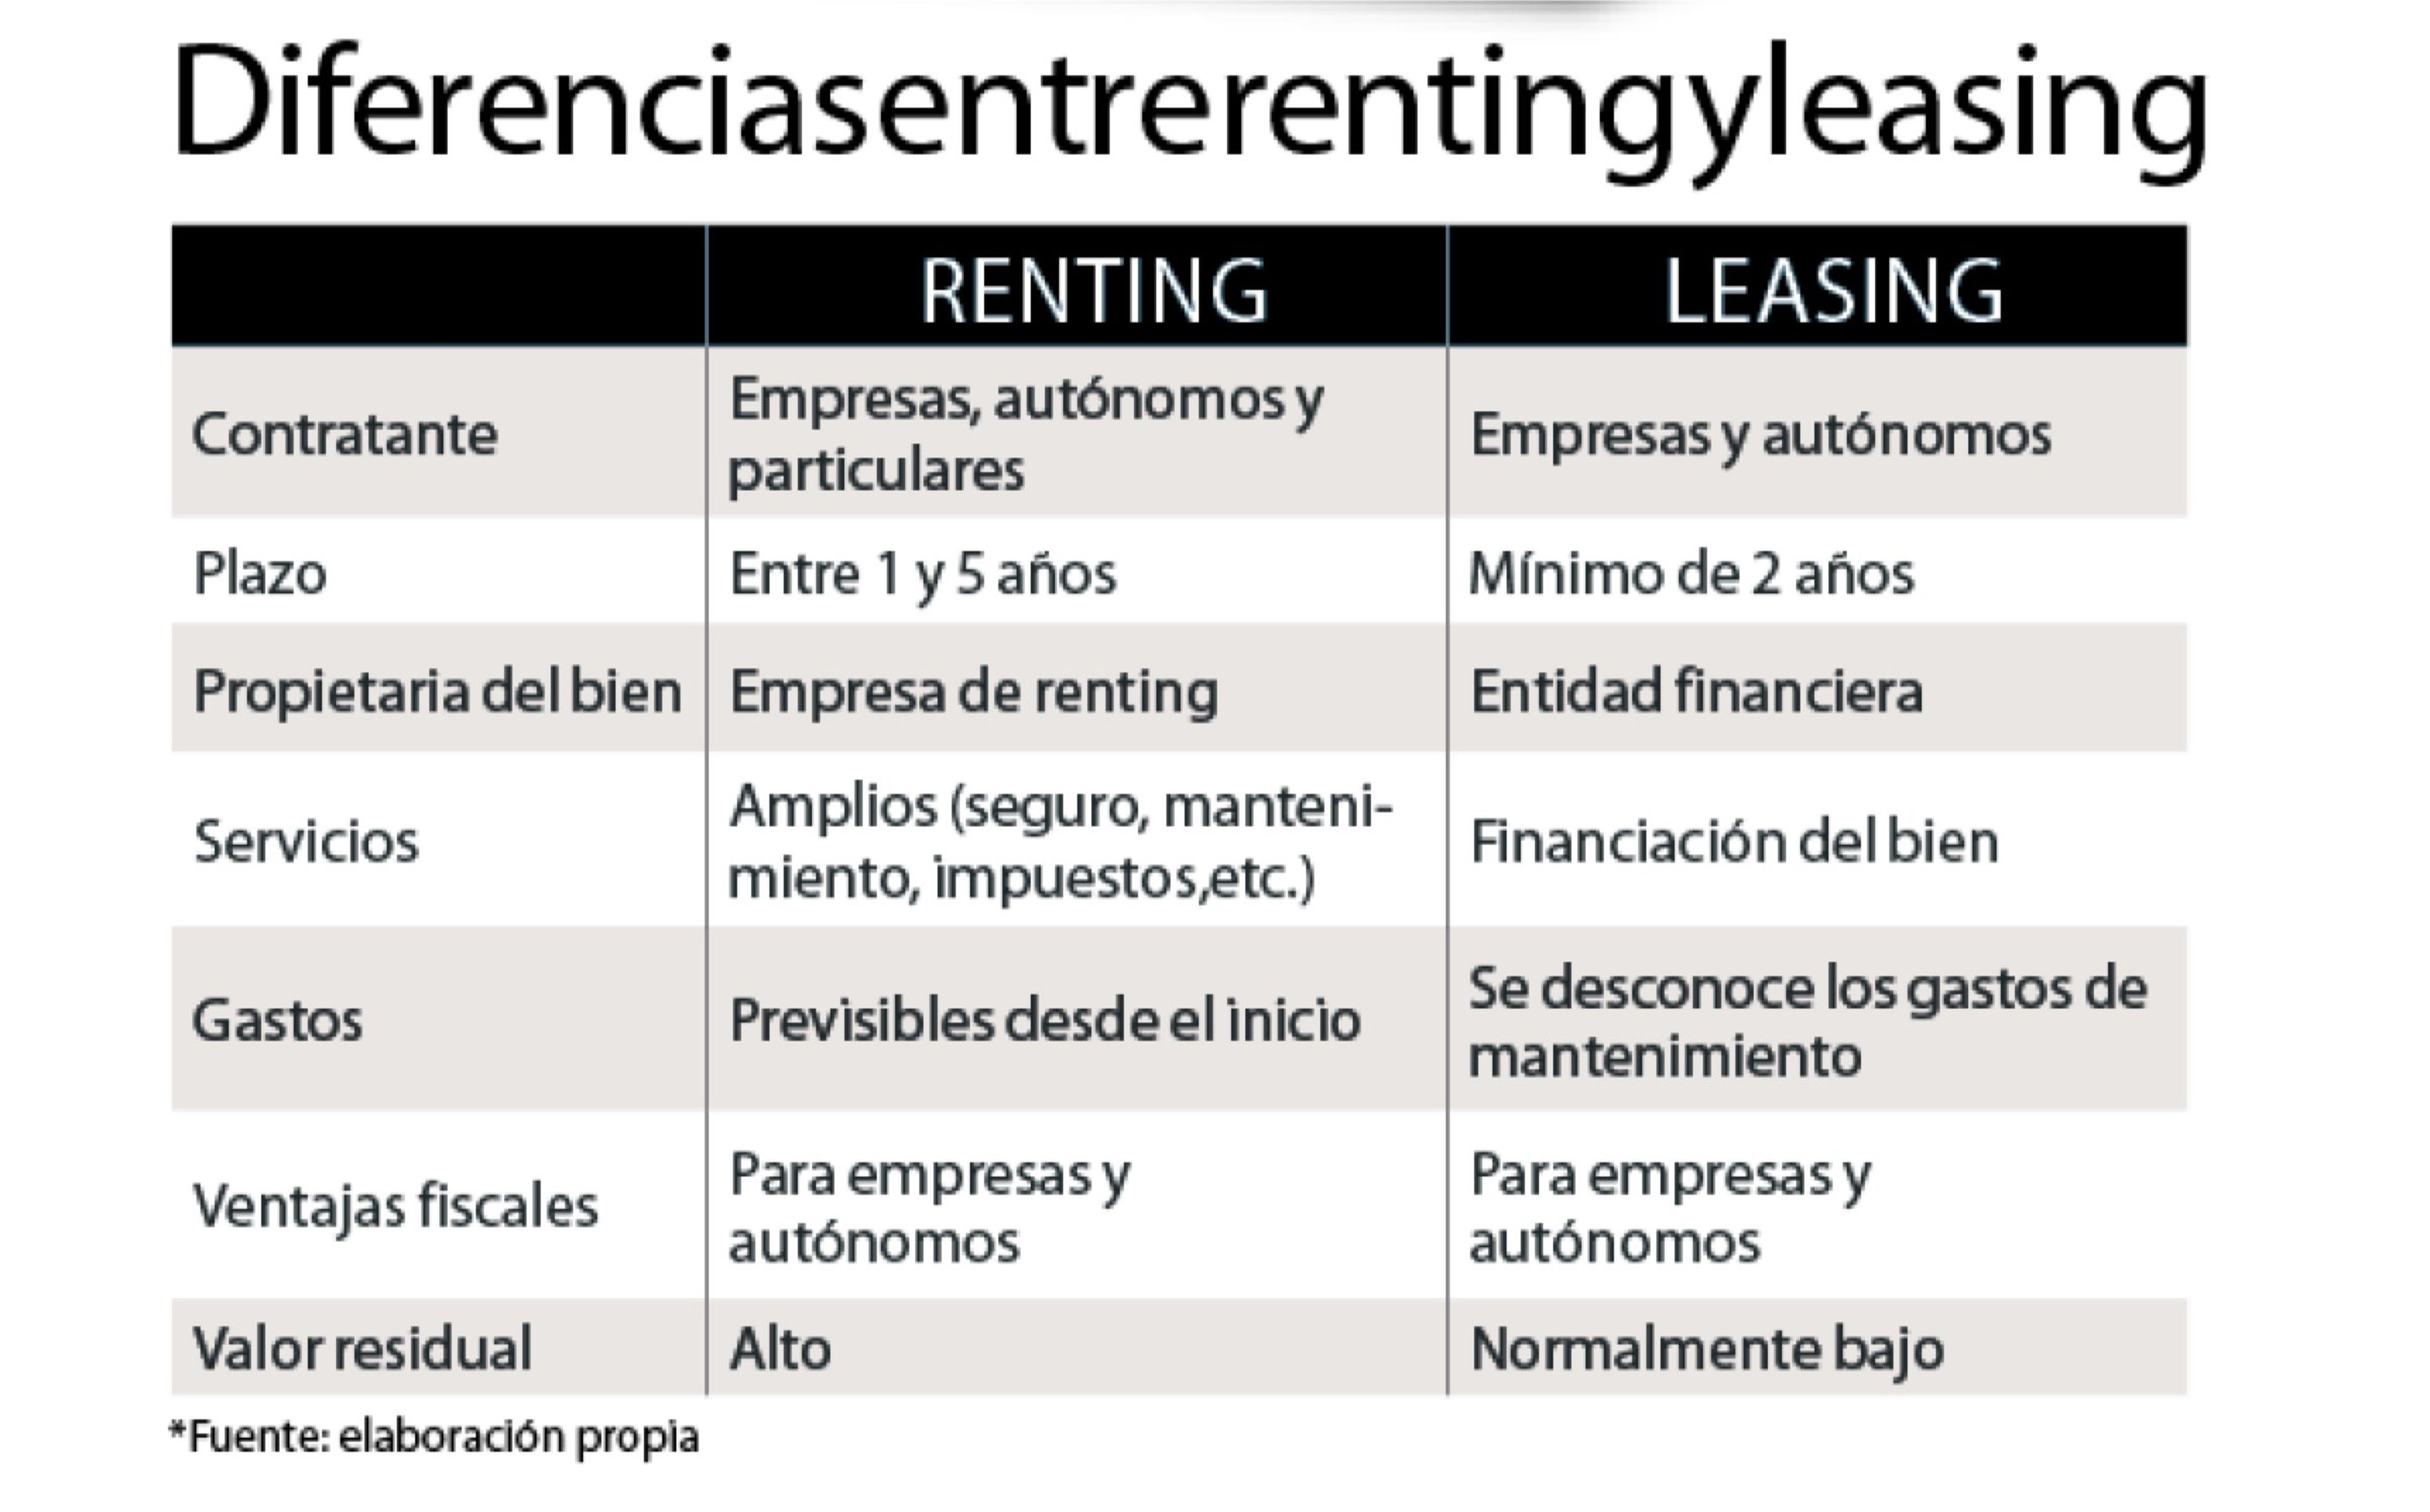 En este cuadro puedes ver cuáles son las diferencias entre el renting y el leasing.